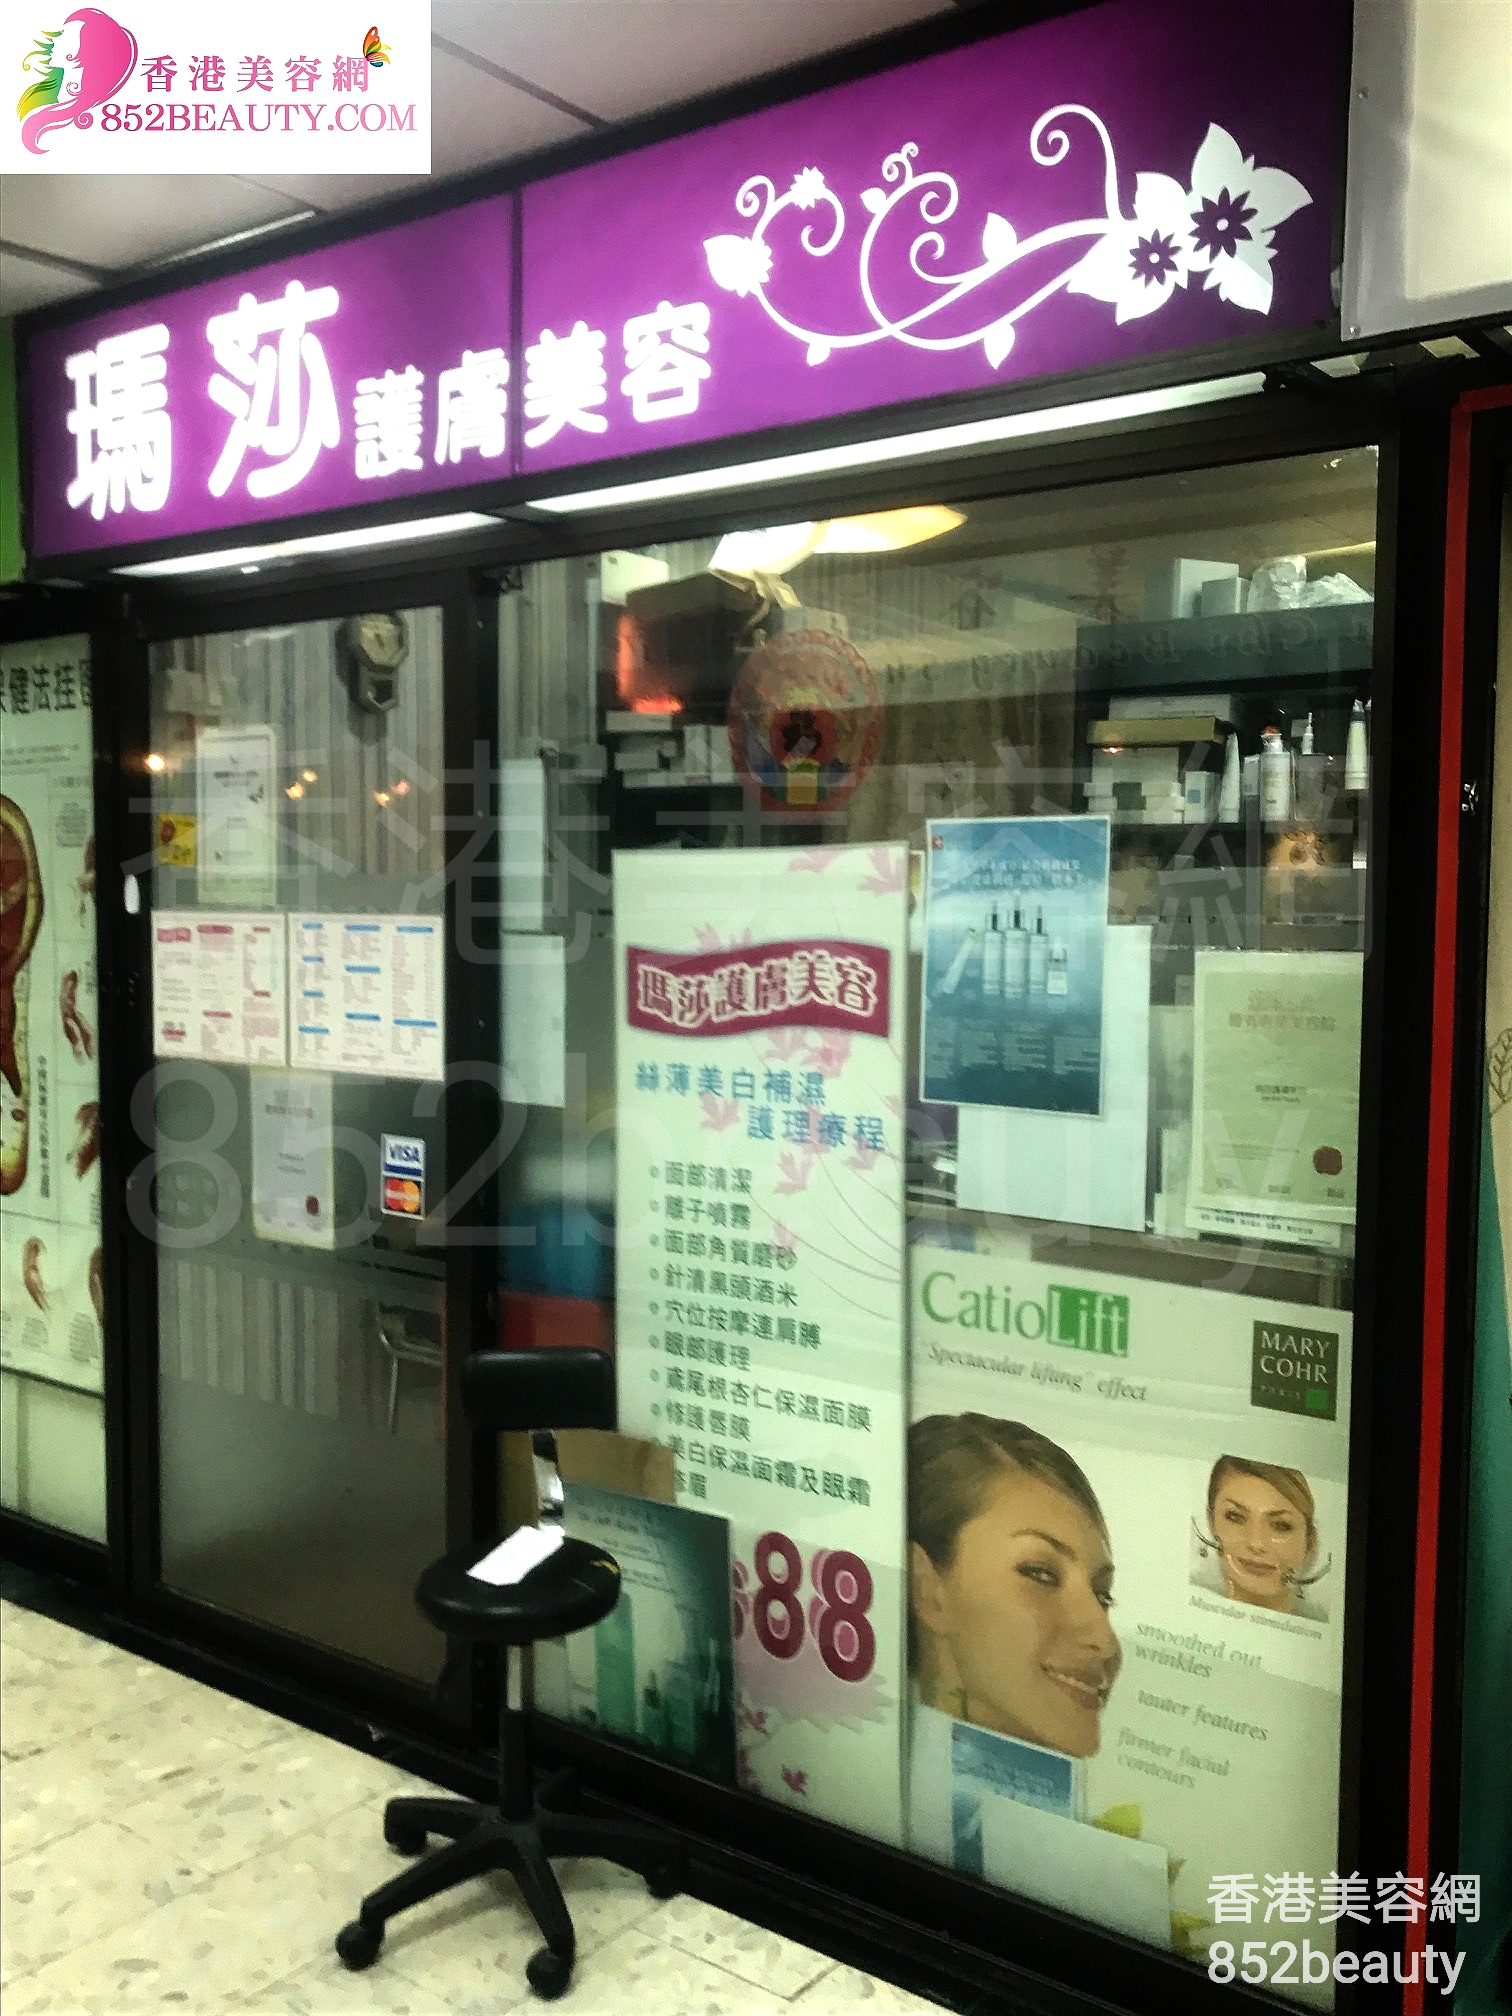 香港美容網 Hong Kong Beauty Salon 美容院 / 美容師: 瑪莎護膚美容